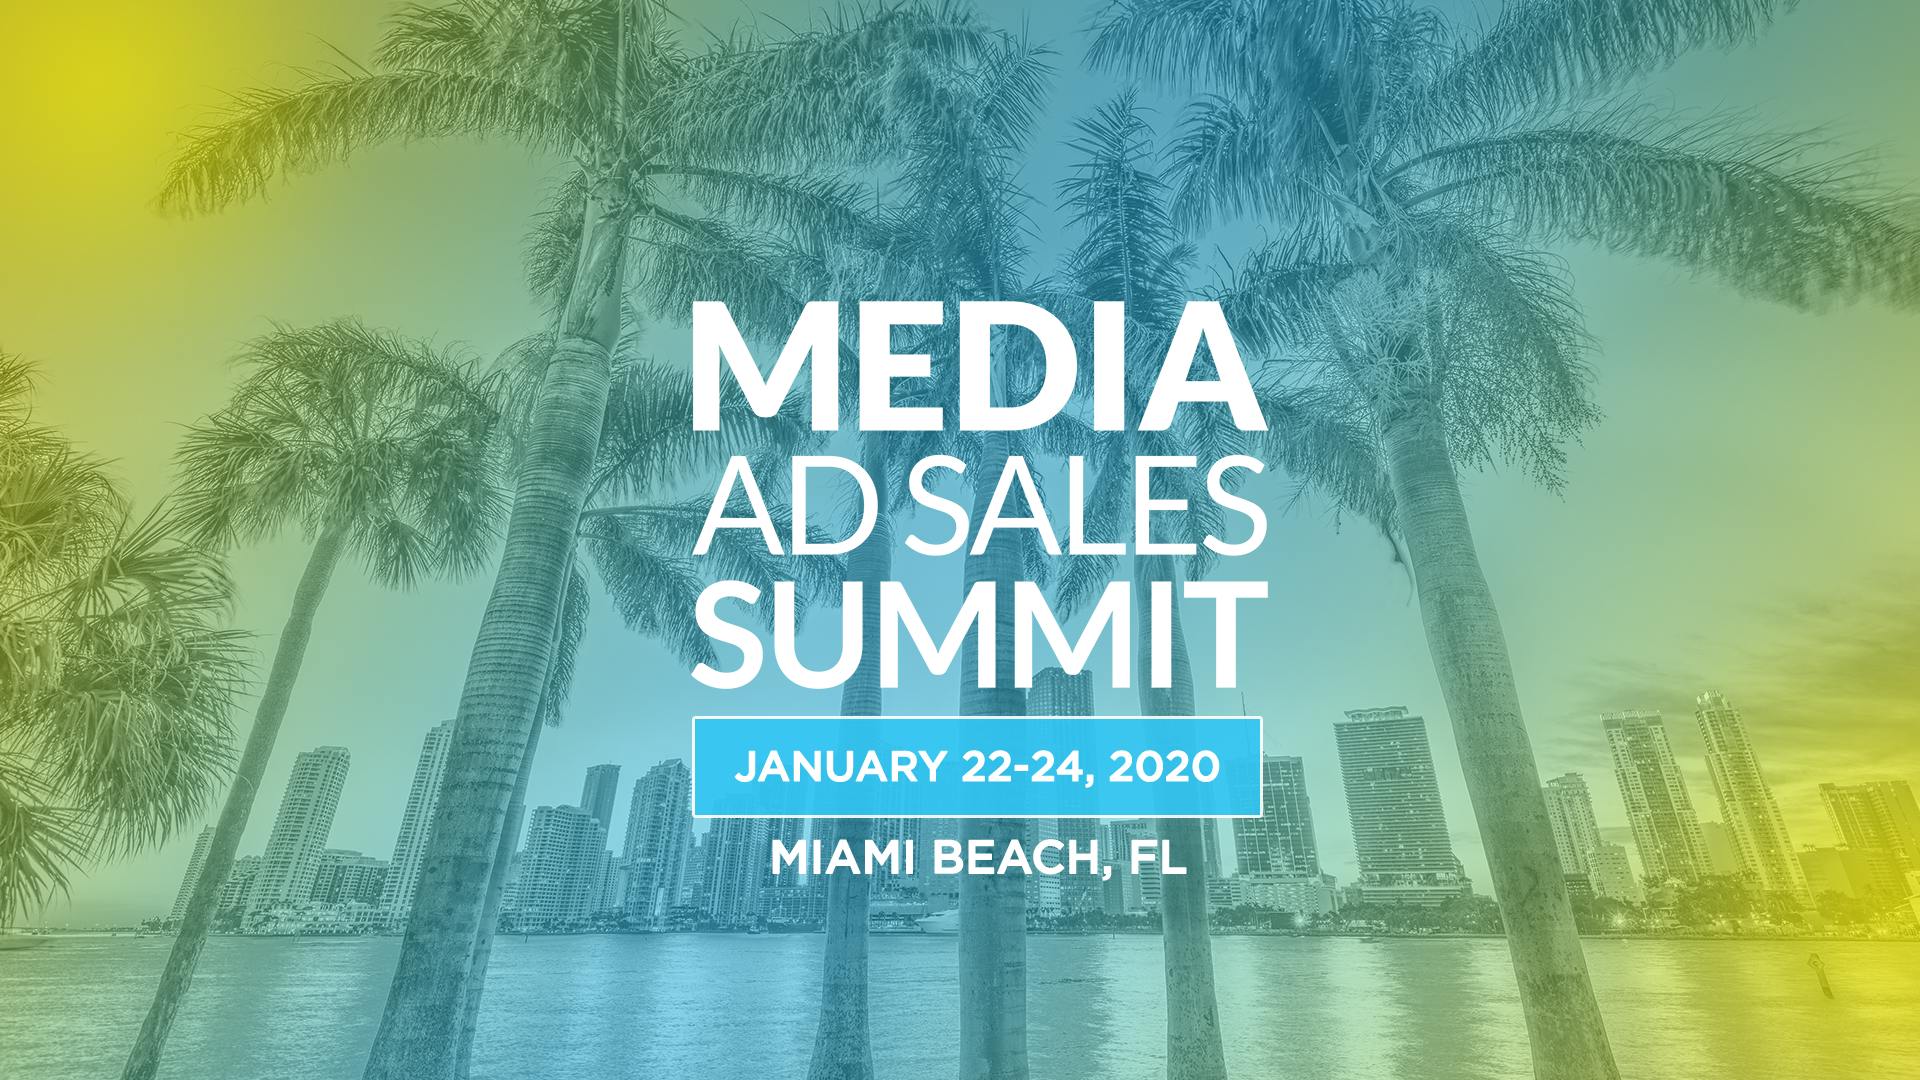 Media Ad Sales Summit 2020